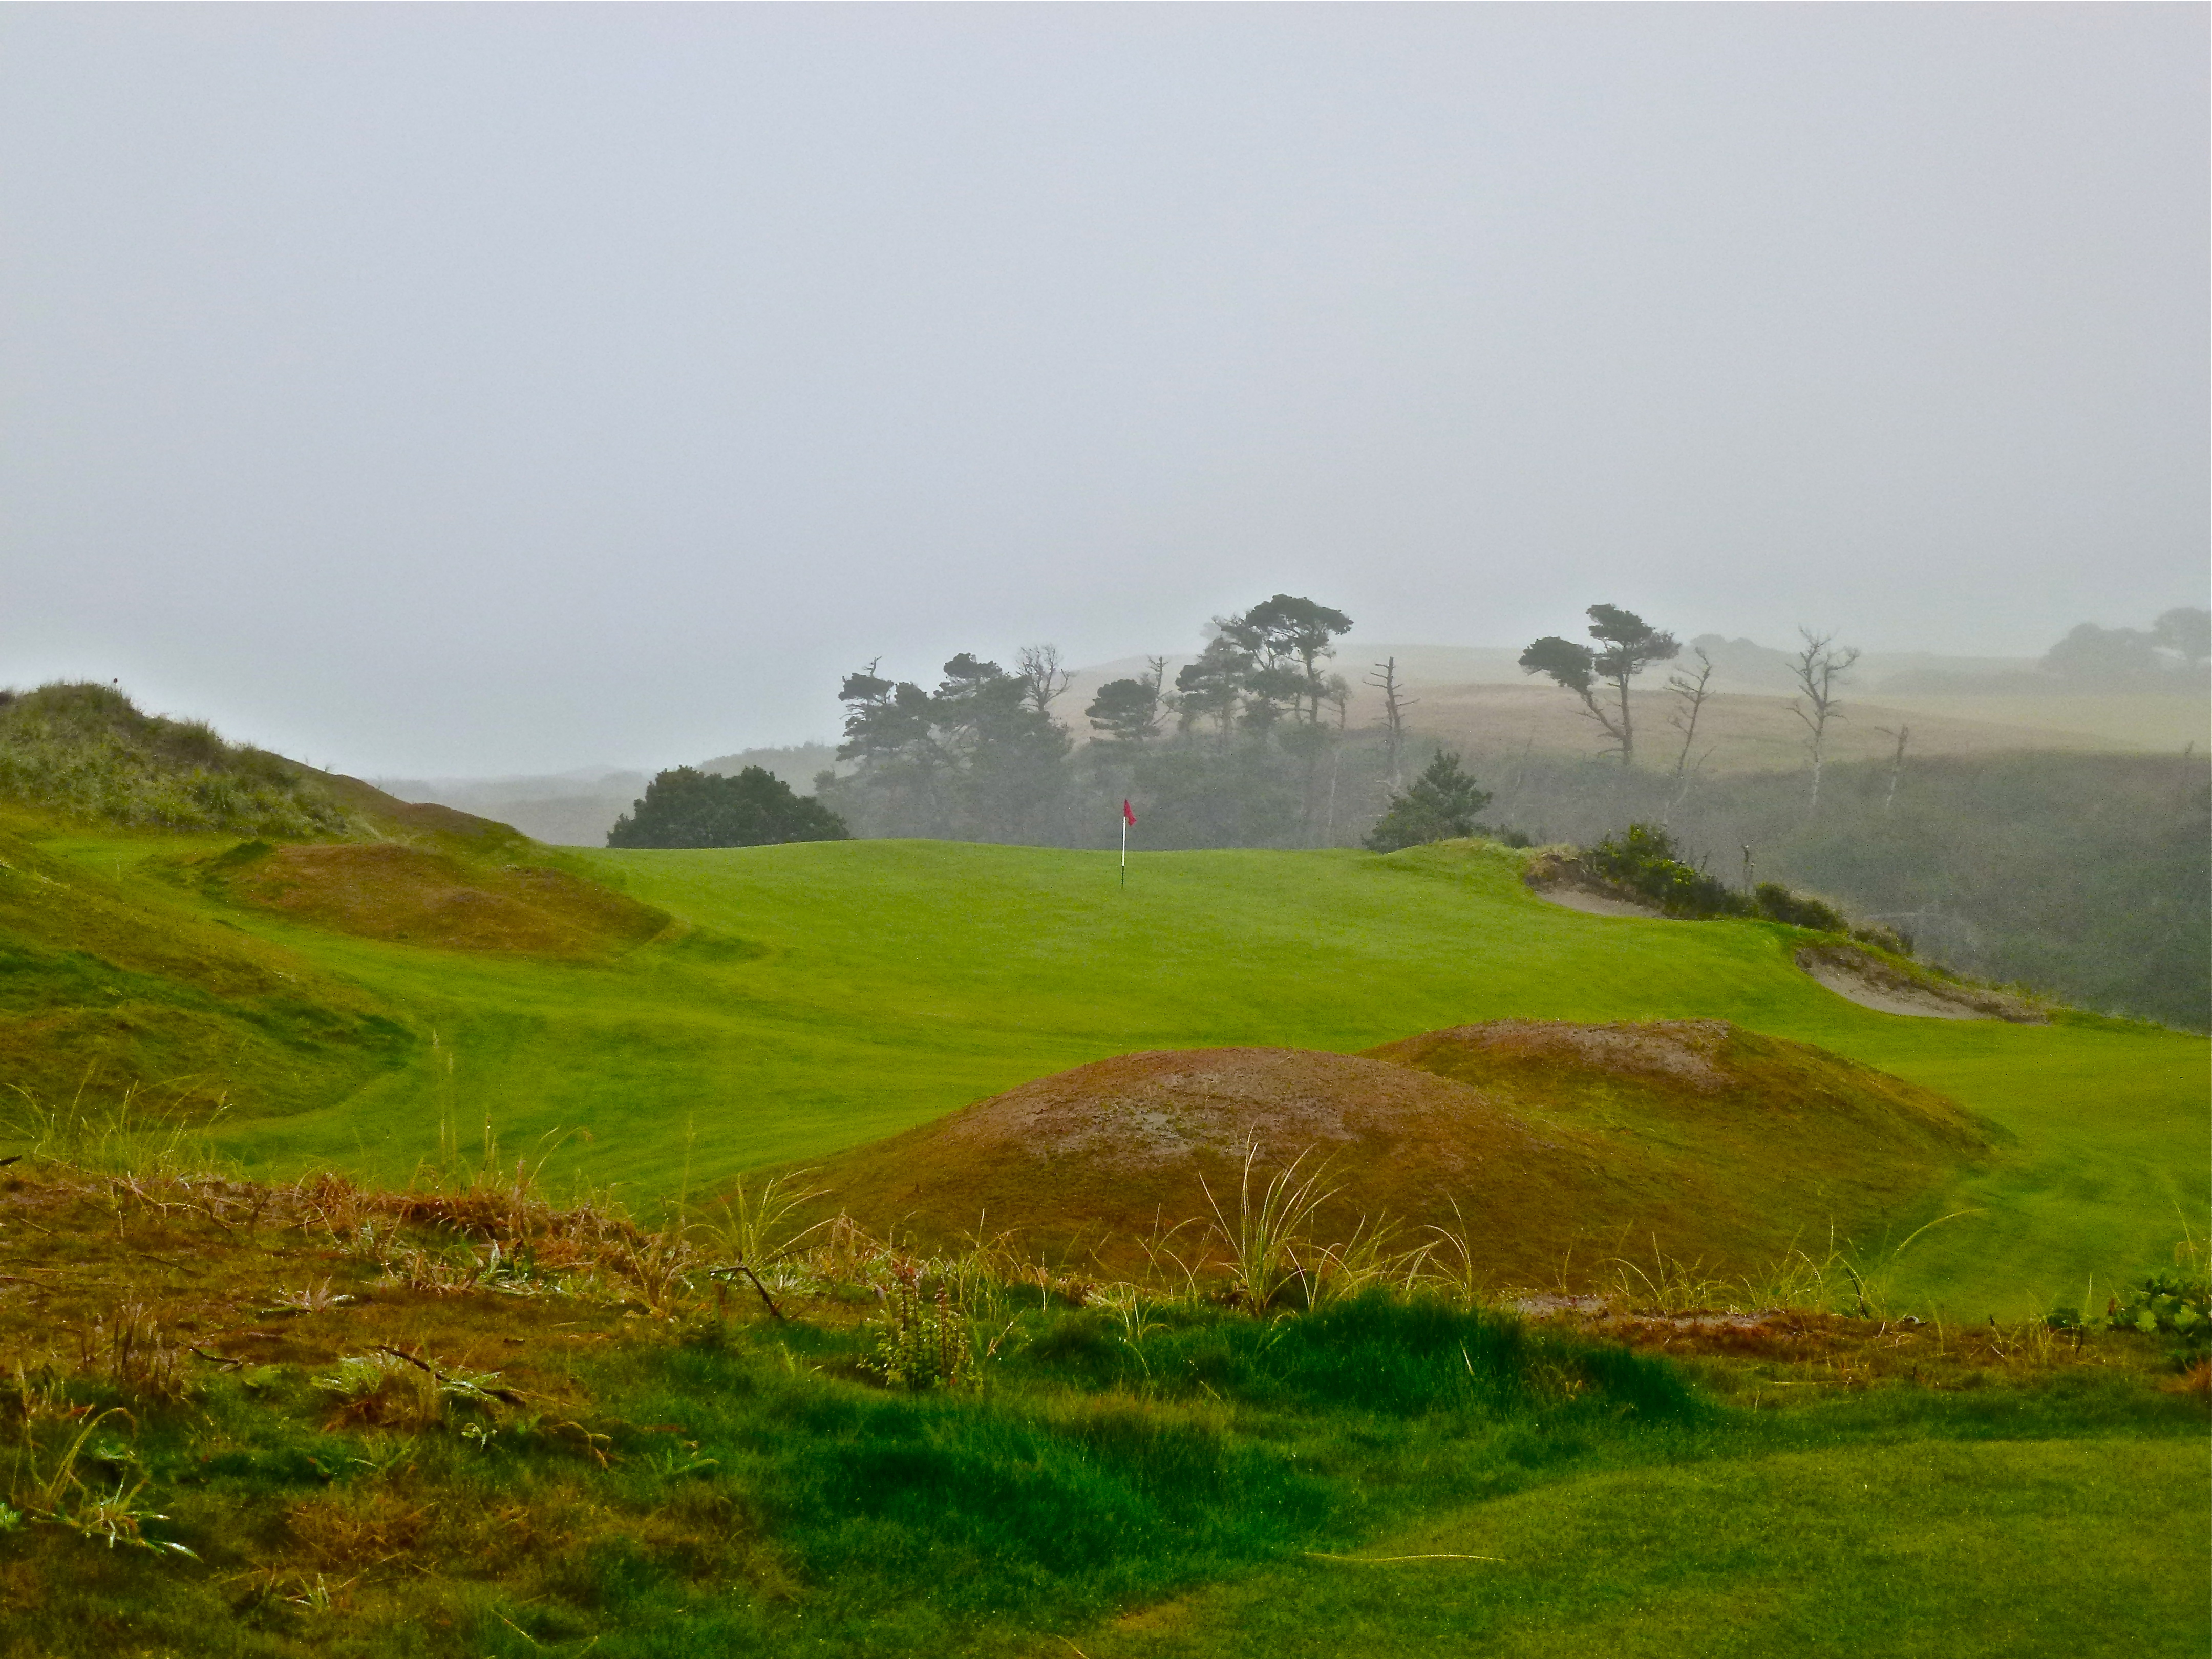 Best Hole Par Golf Course The Bandon Preserve Oregon